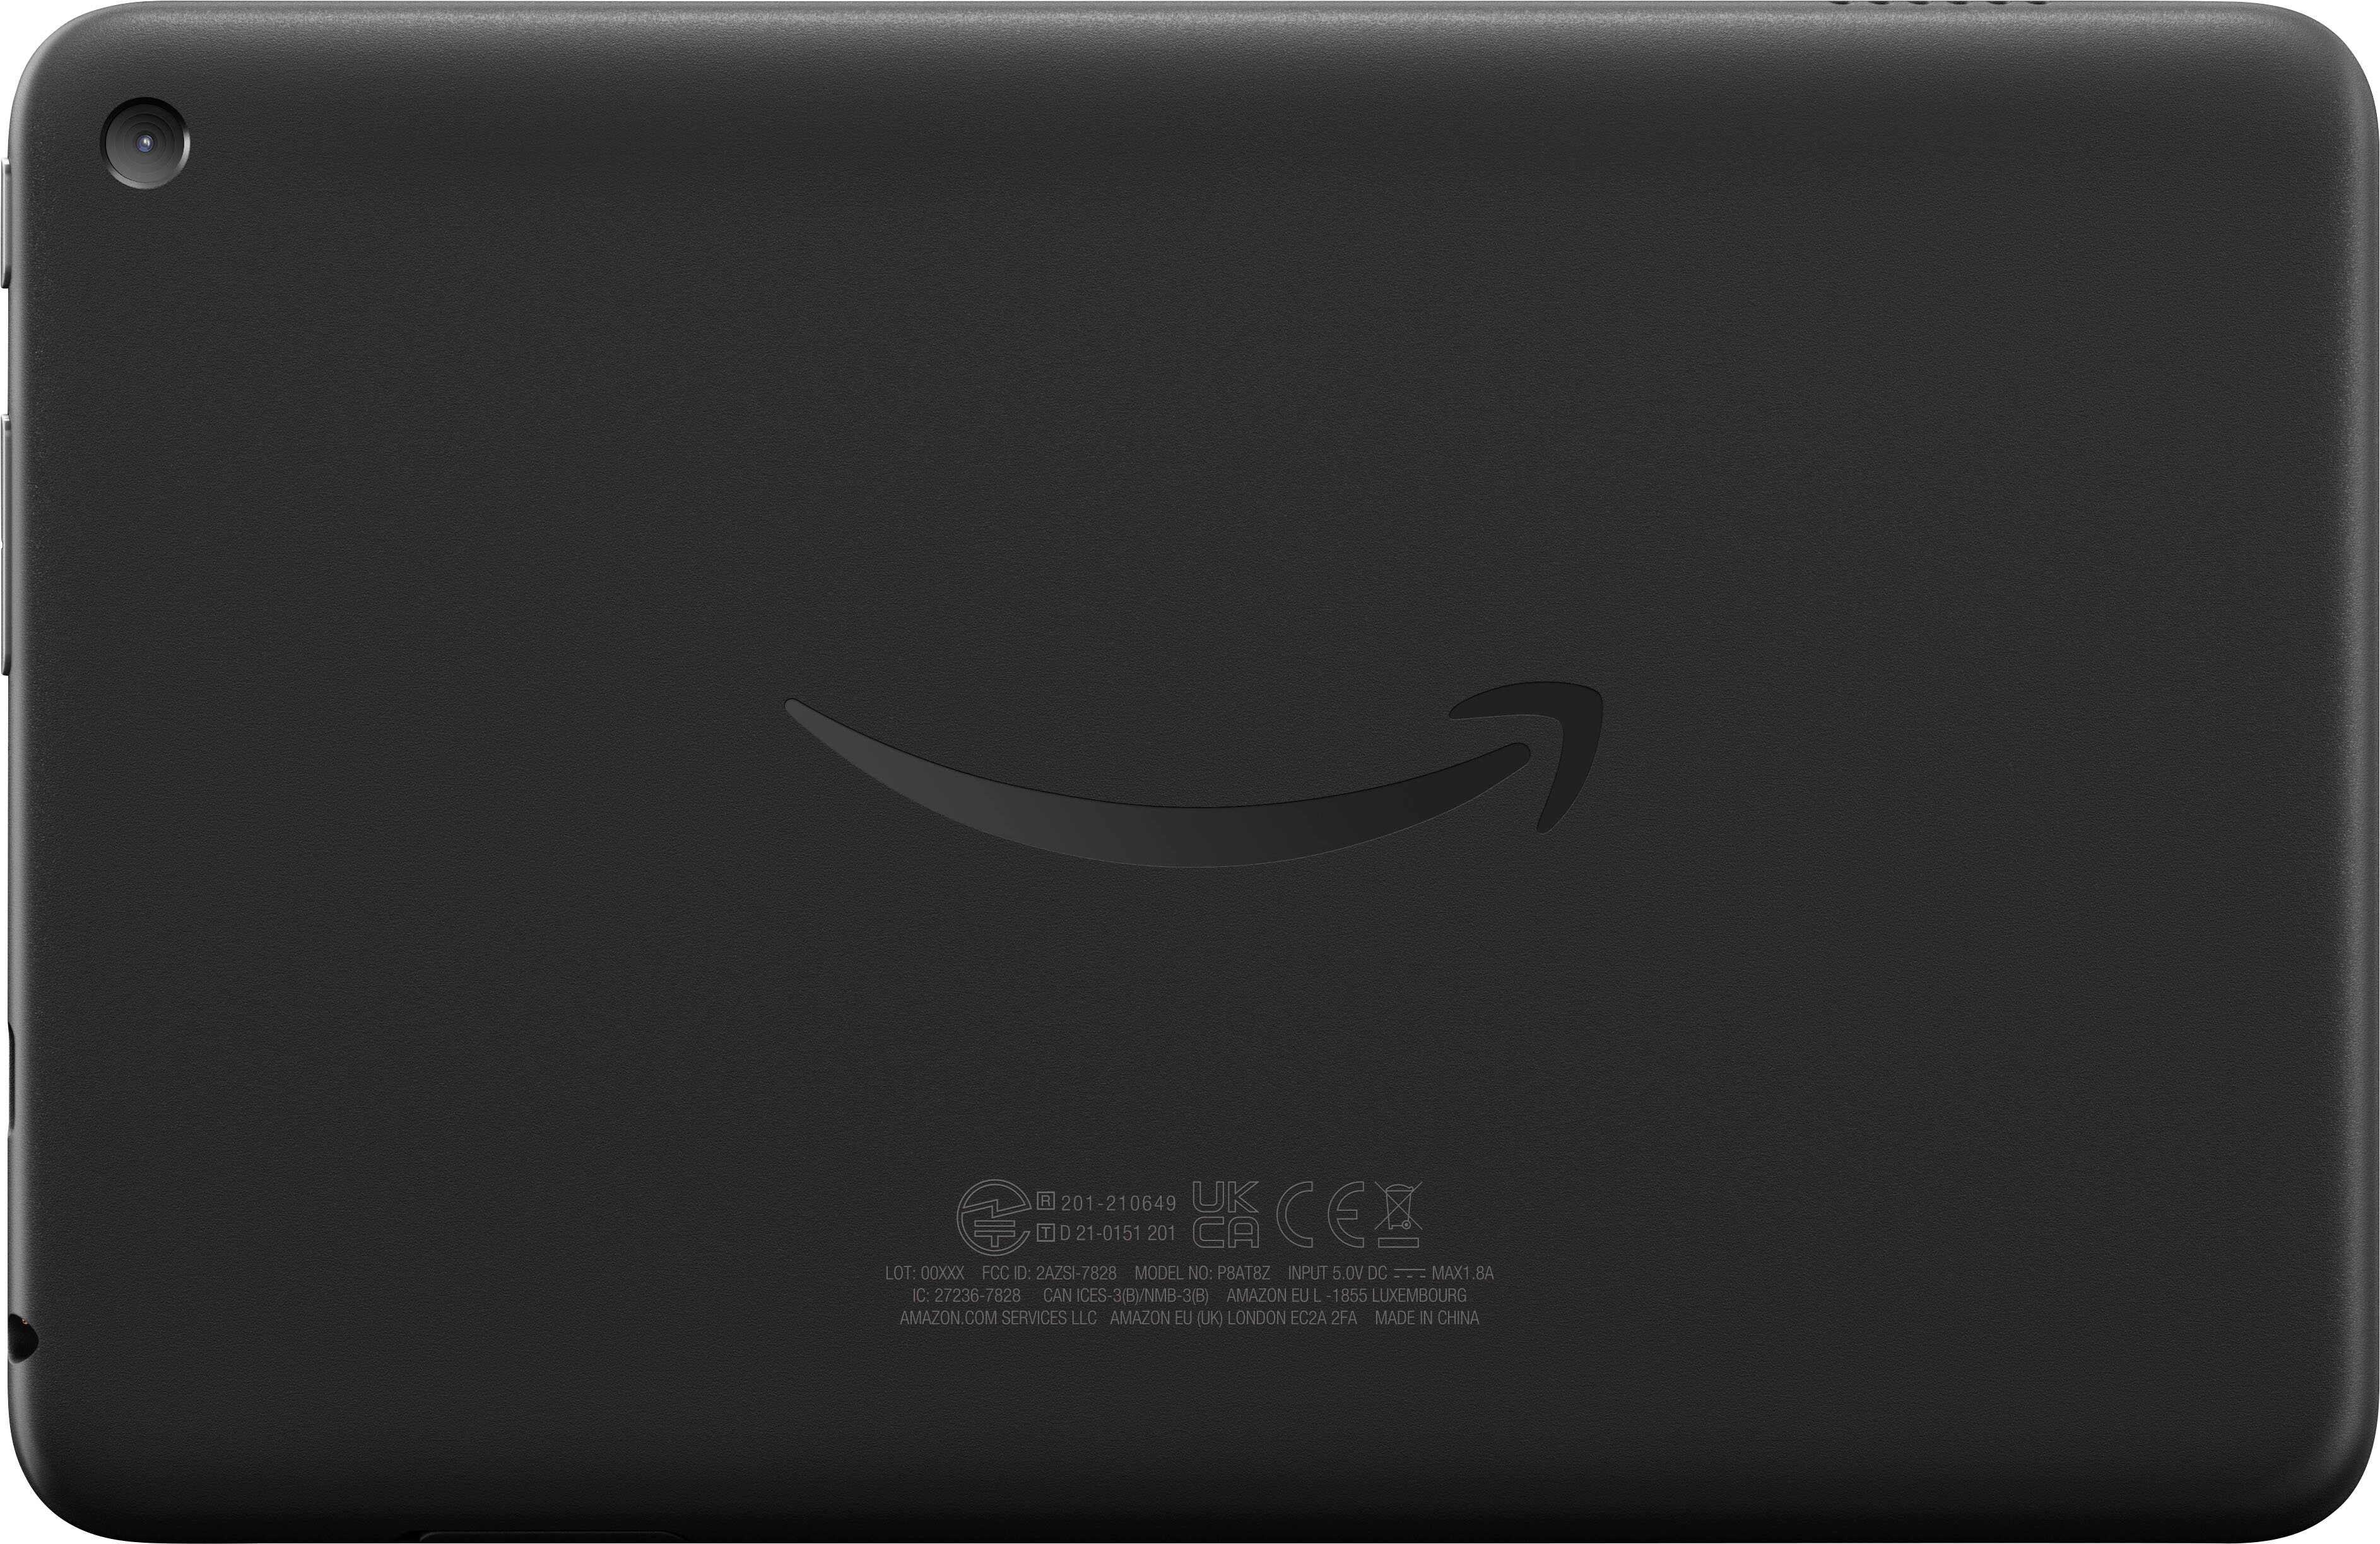 Fire 7 (2022) 7” tablet with Wi-Fi 16 GB Black B096WKKK2K